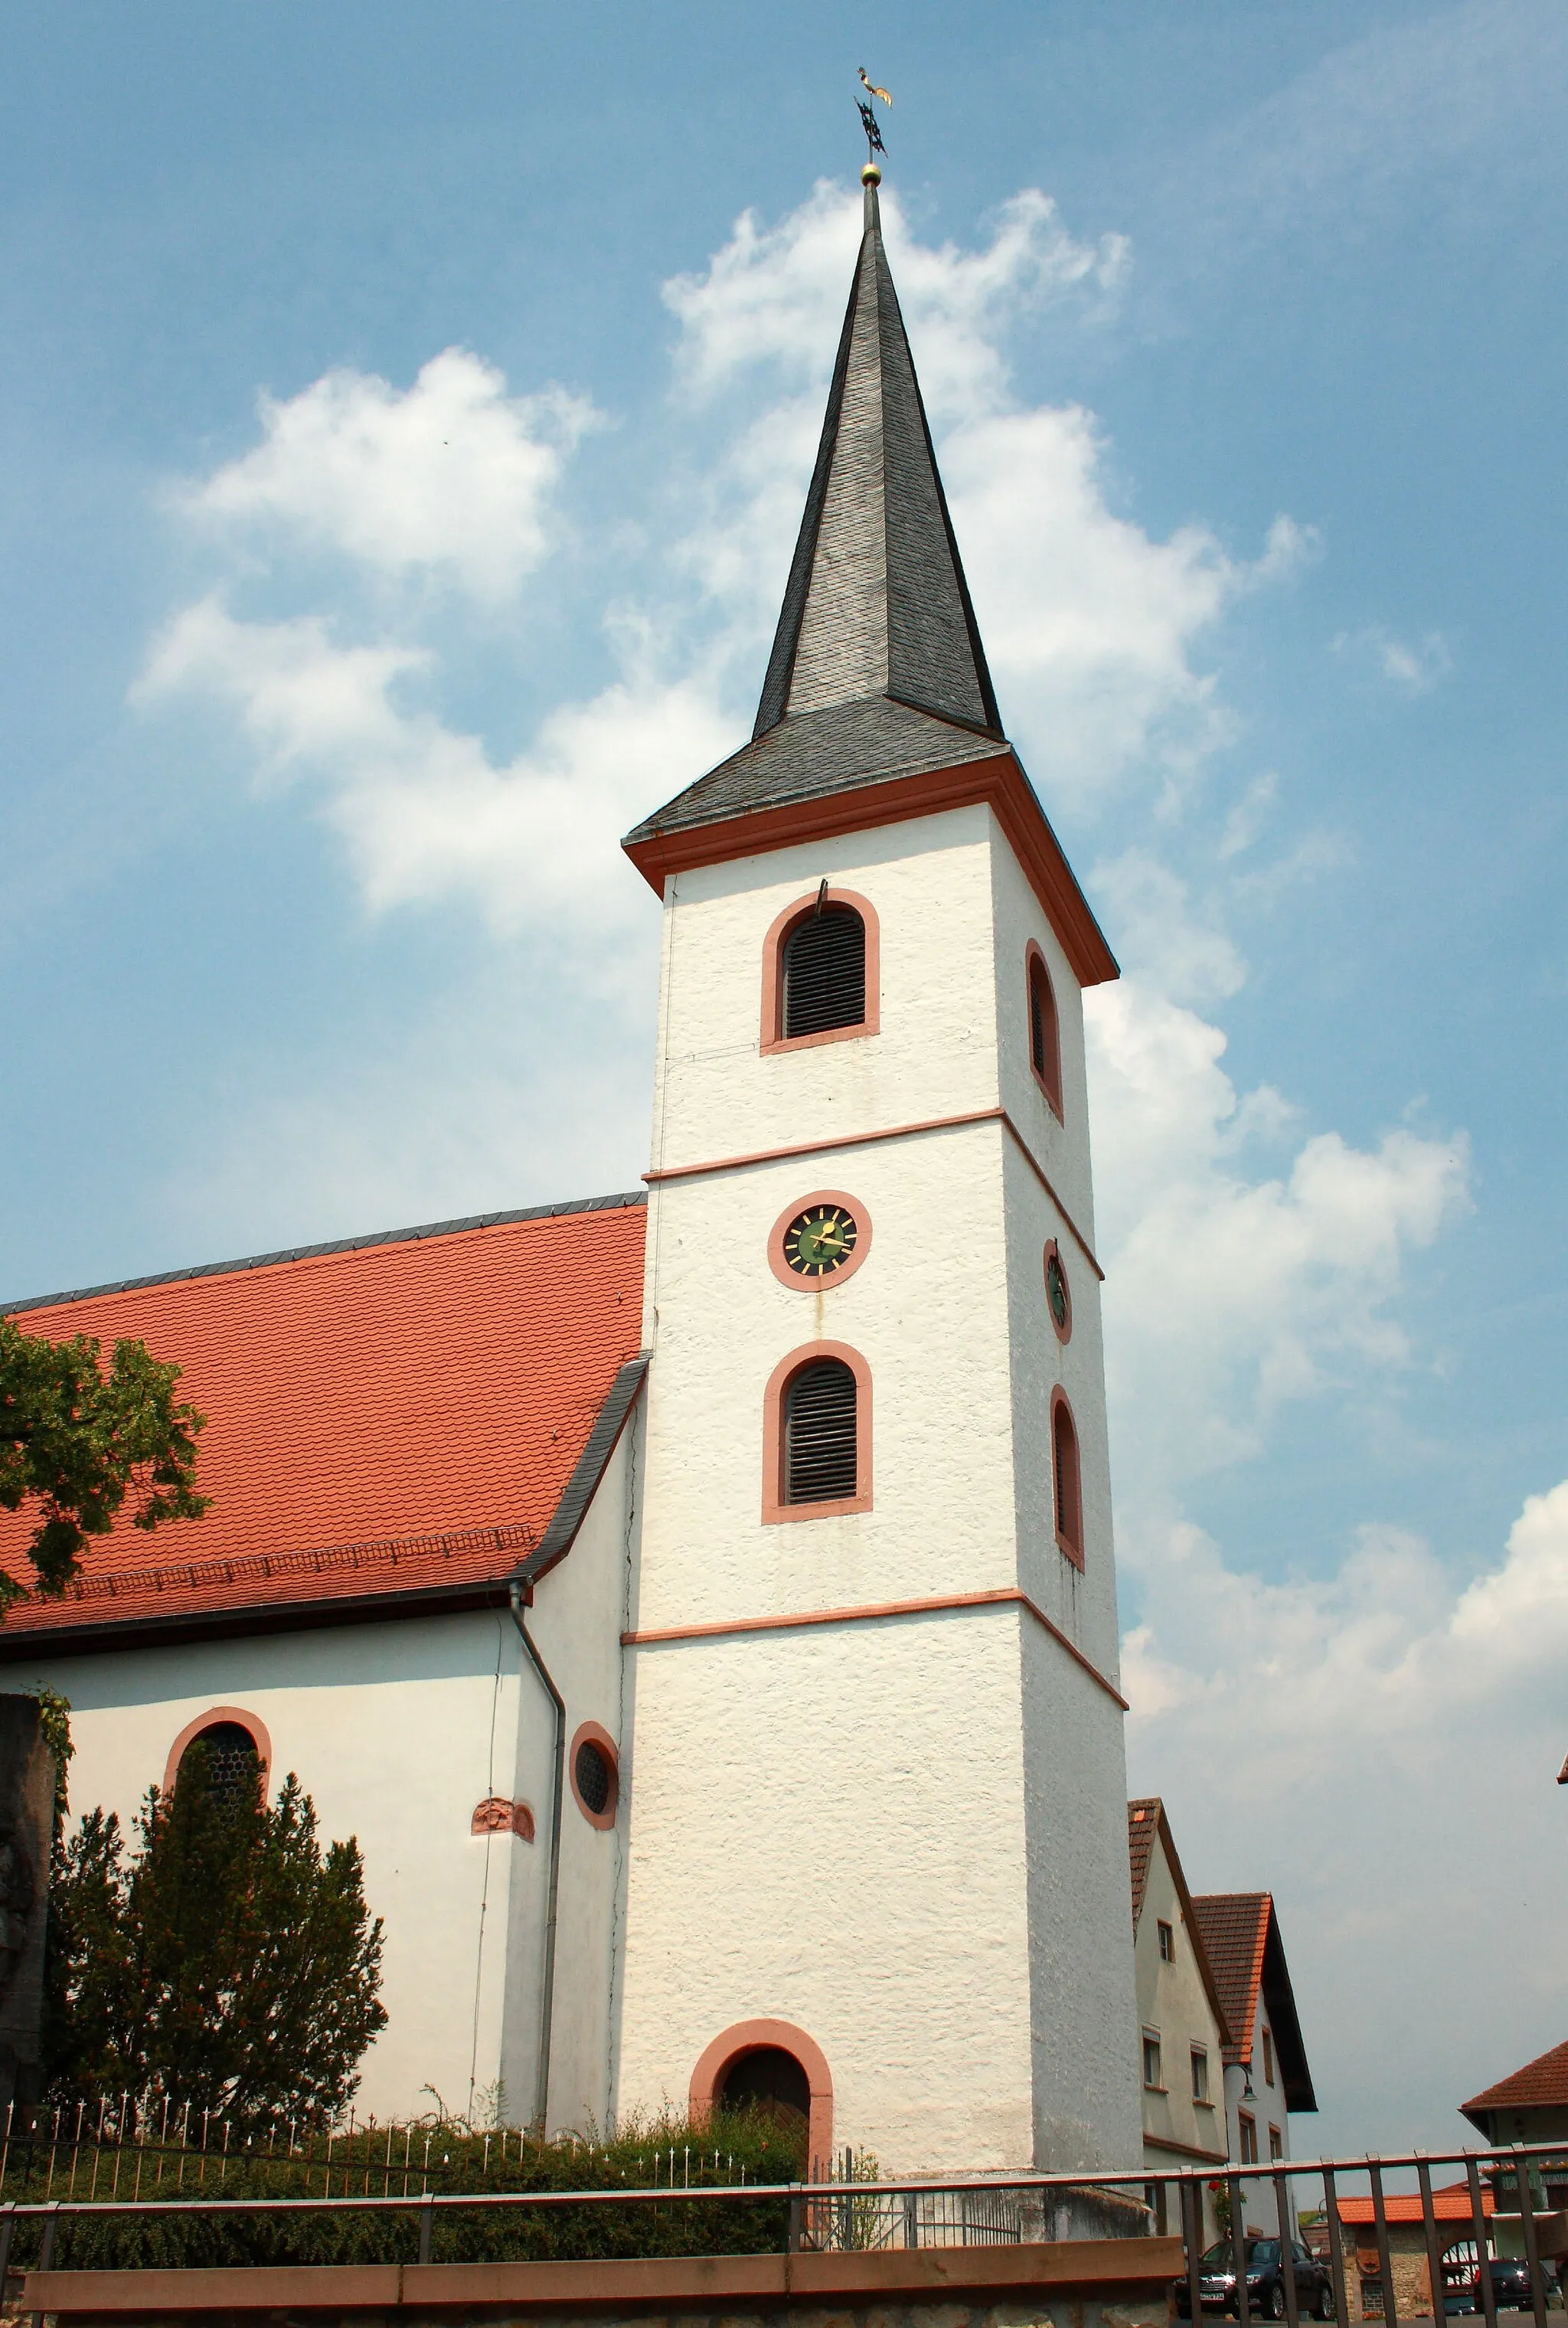 Image of Stadecken-Elsheim